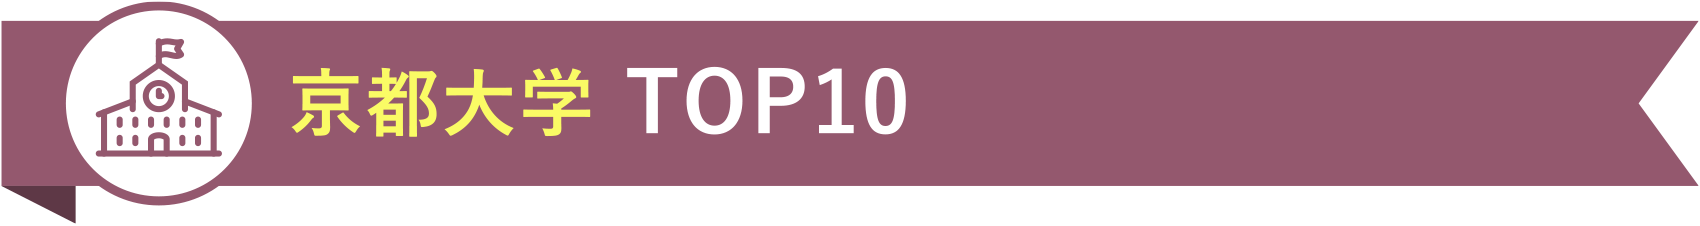 京都大学 TOP10